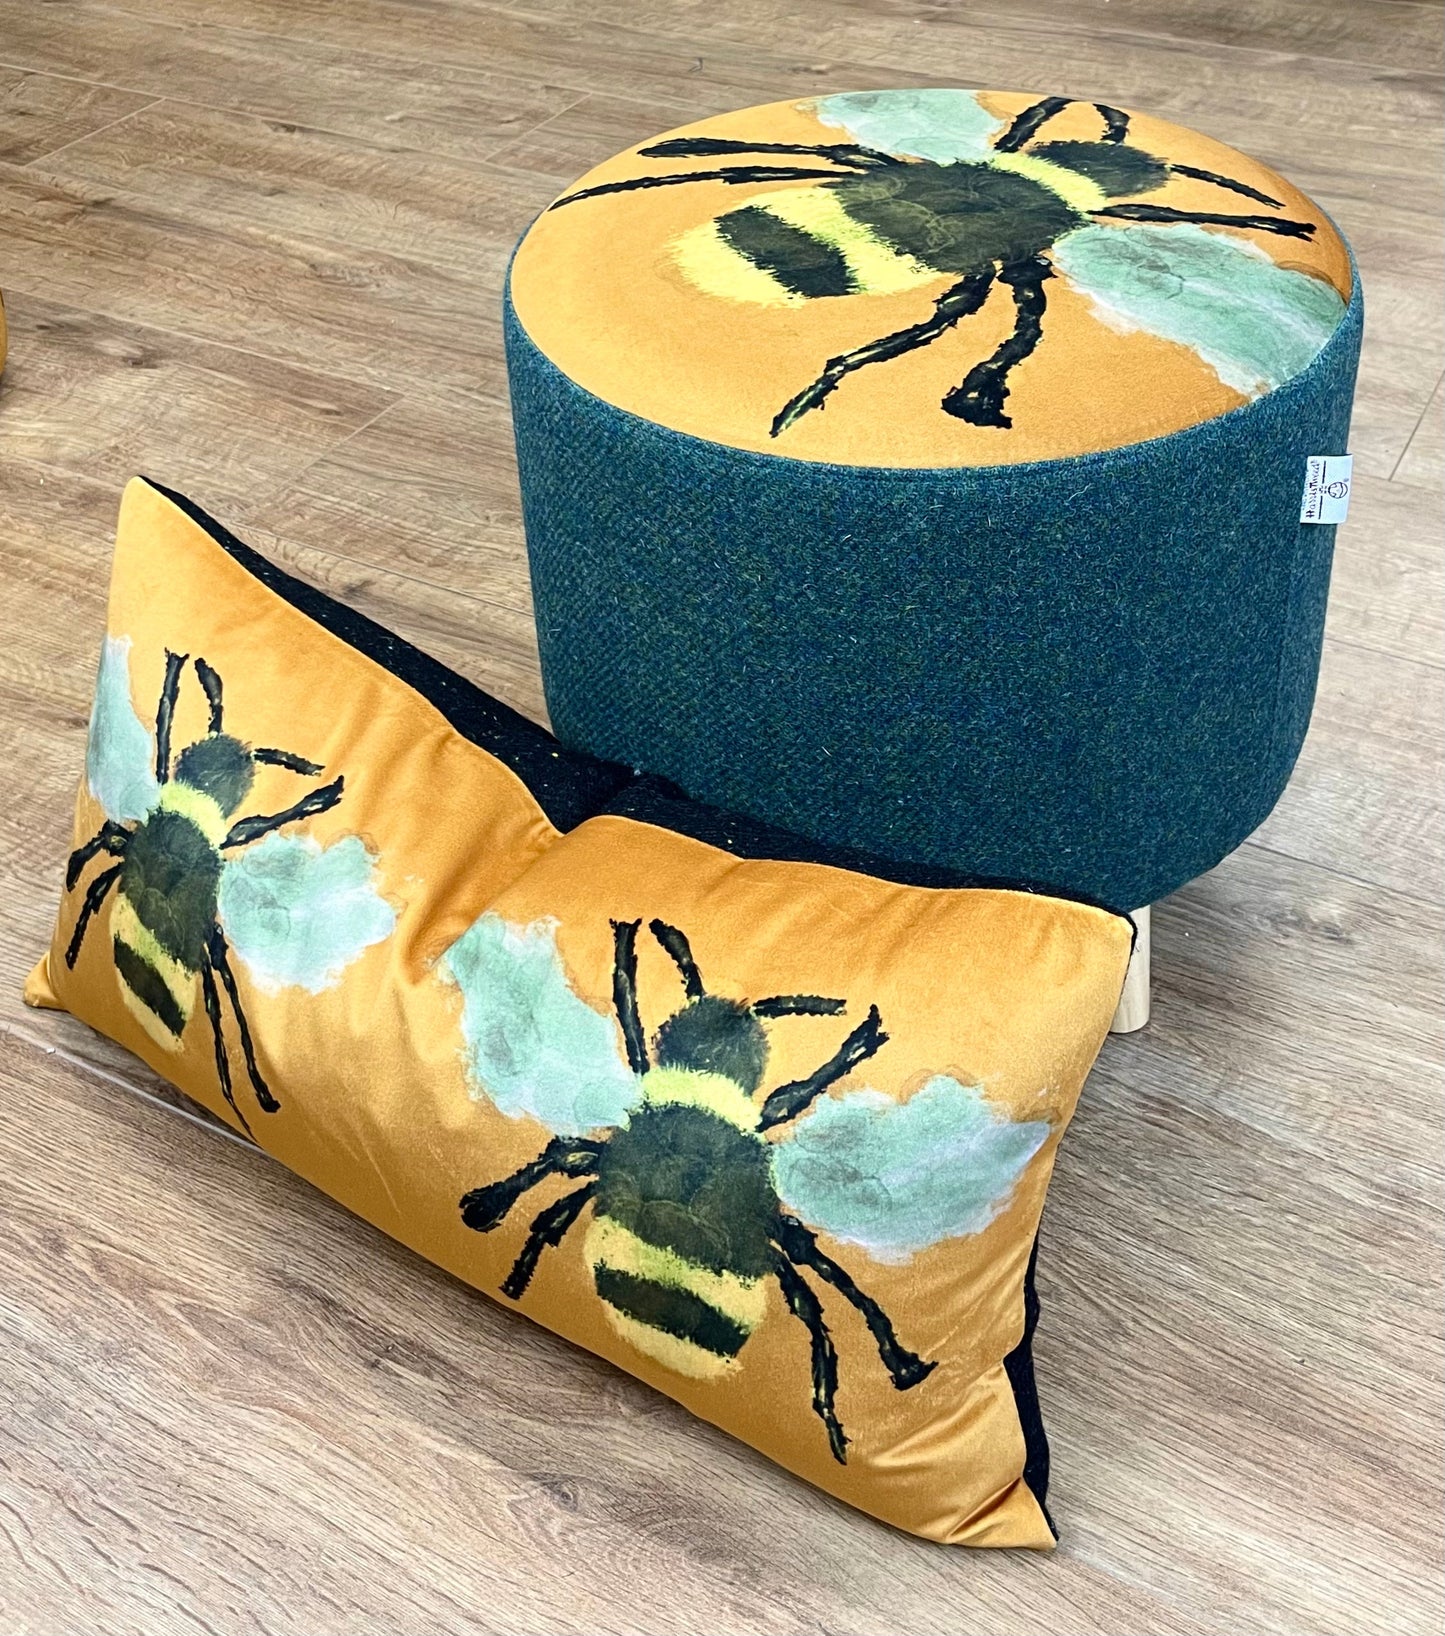 Bumble Bee Footstool with Green Harris Tweed